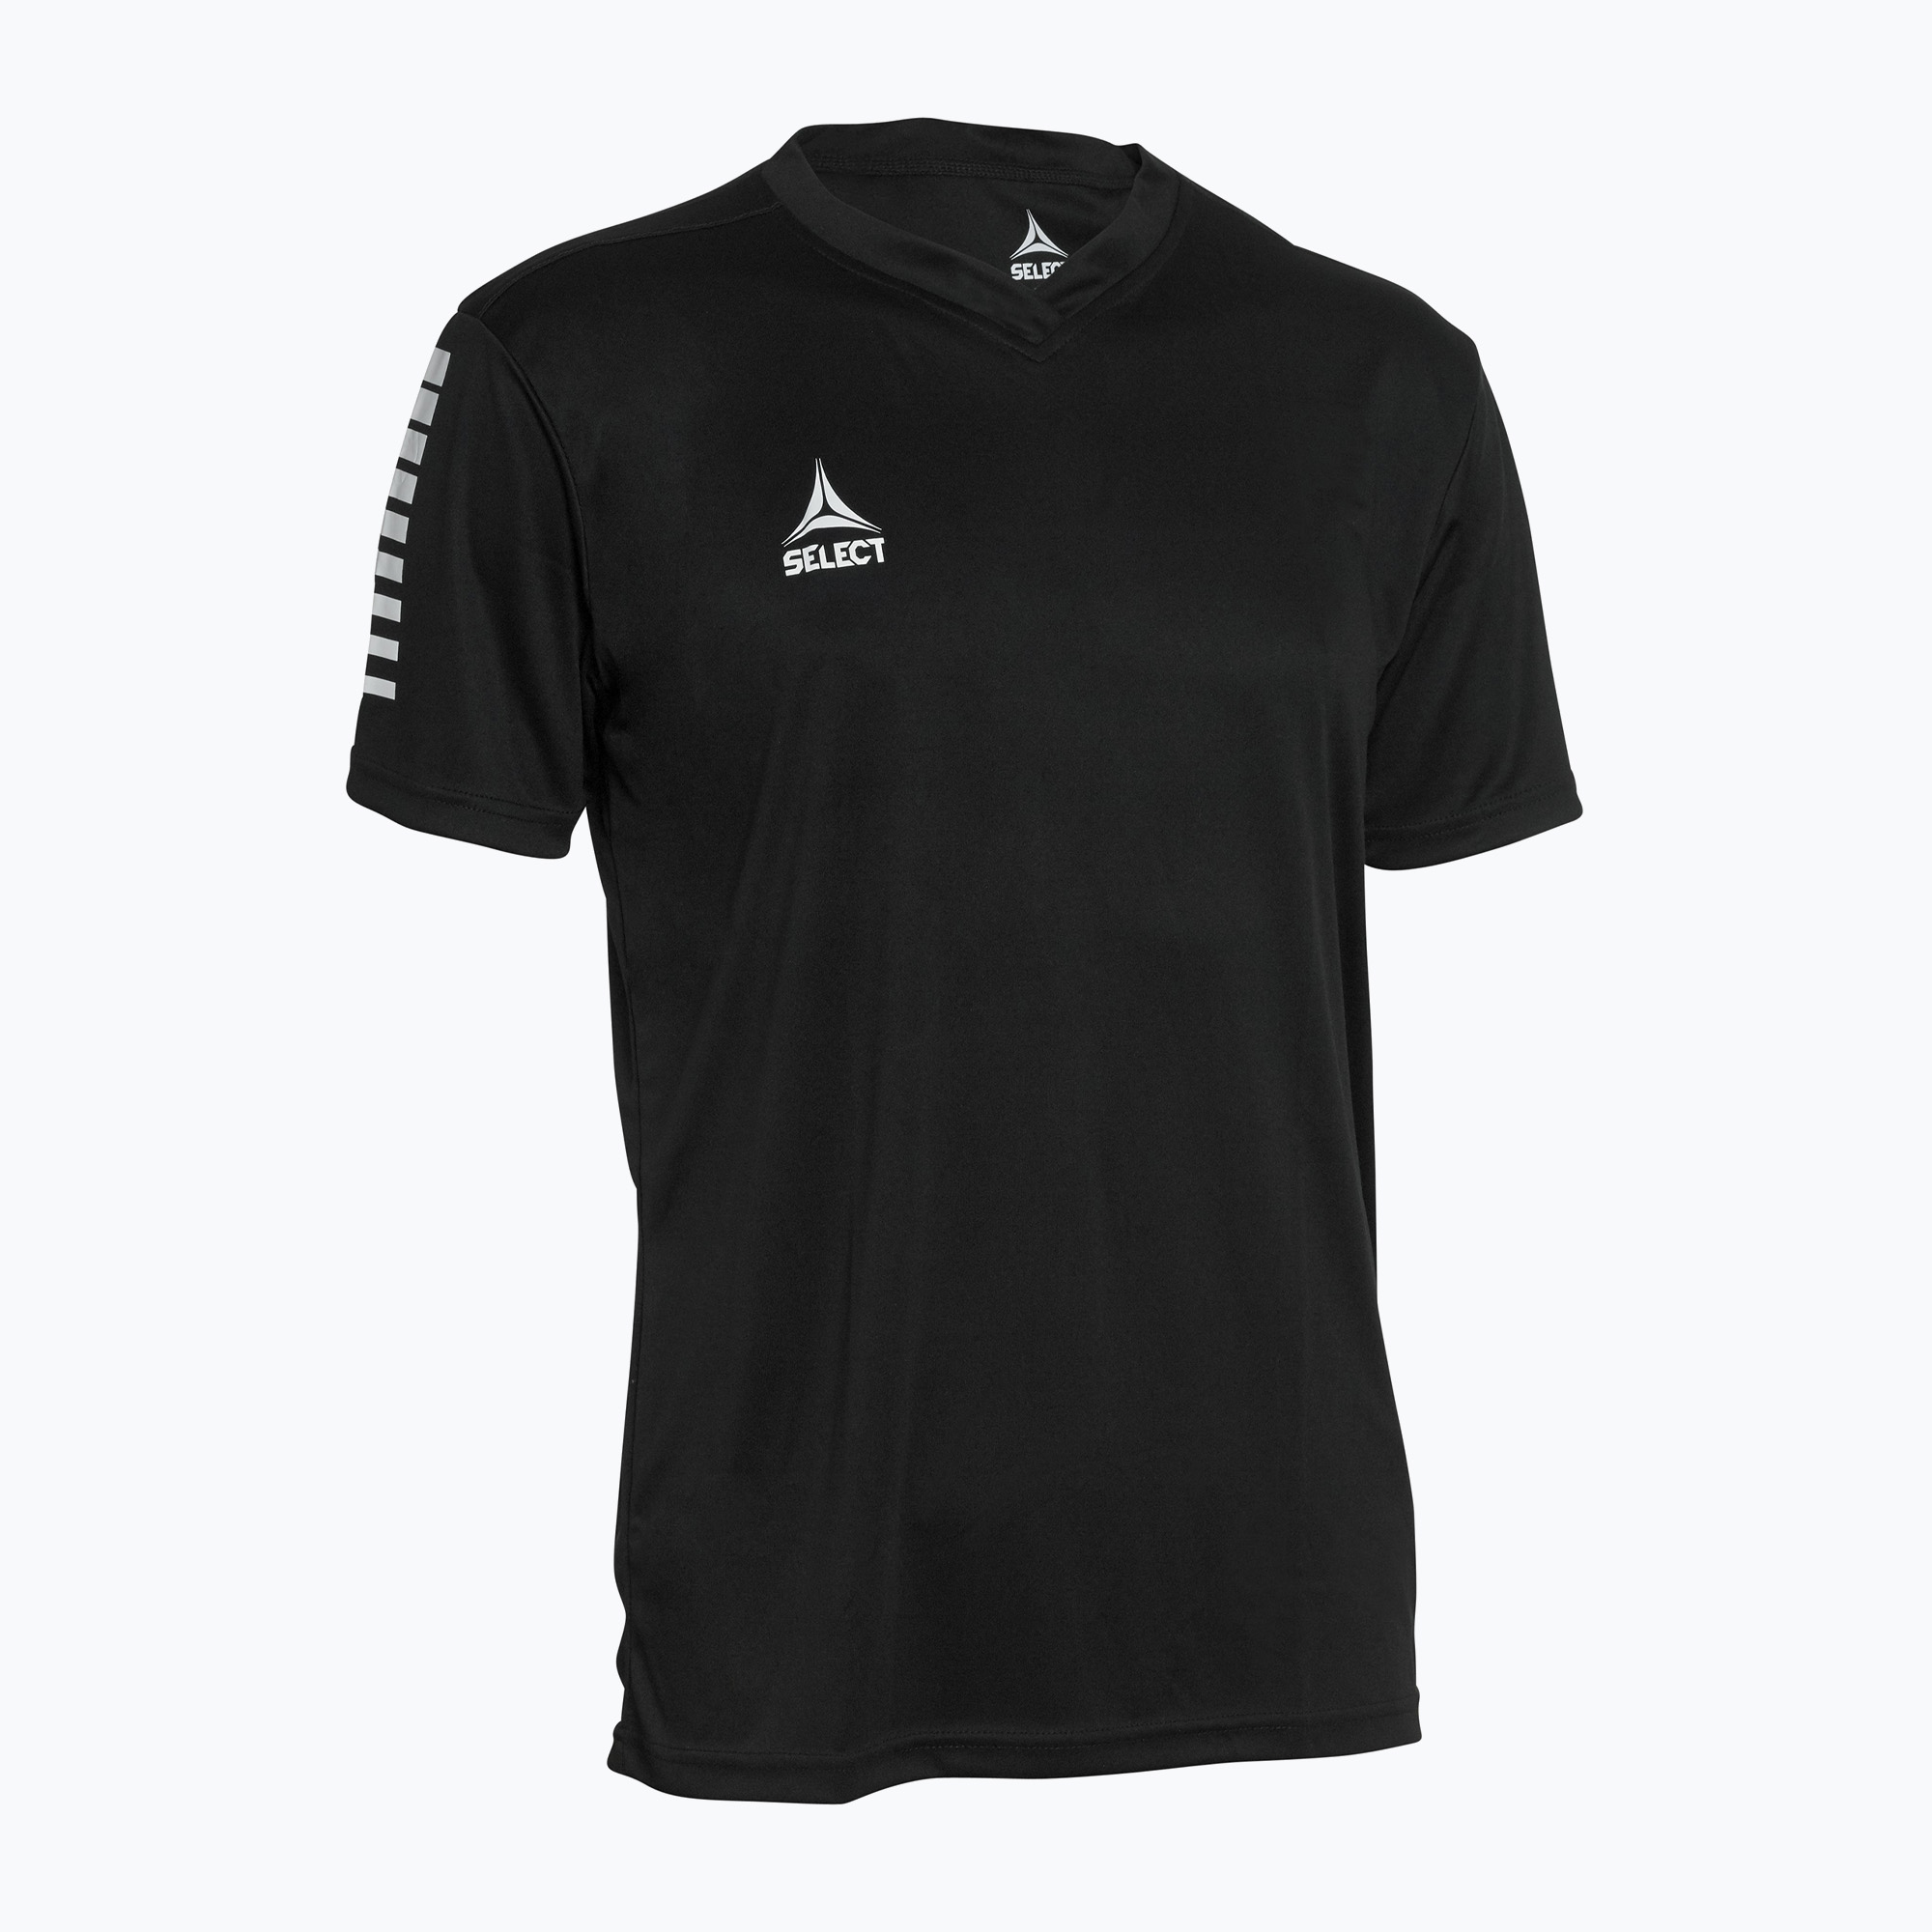 SELECT Pisa SS futbalové tričko čierne 600057